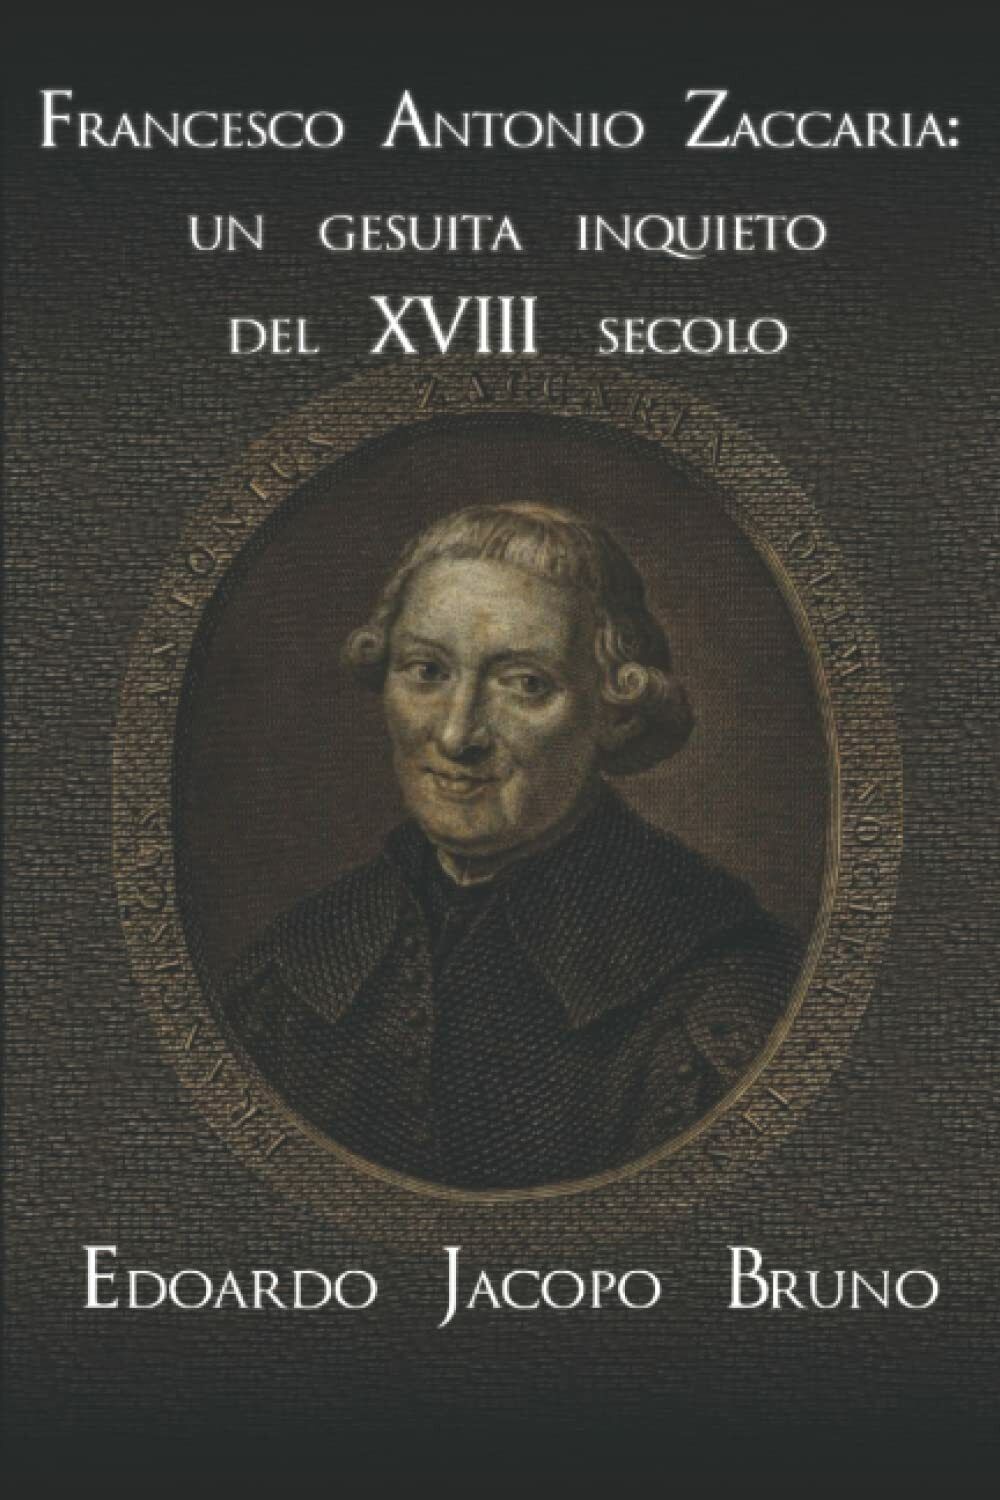 Francesco Antonio Zaccaria: un gesuita inquieto del XVIII secolo di Edoardo Jaco